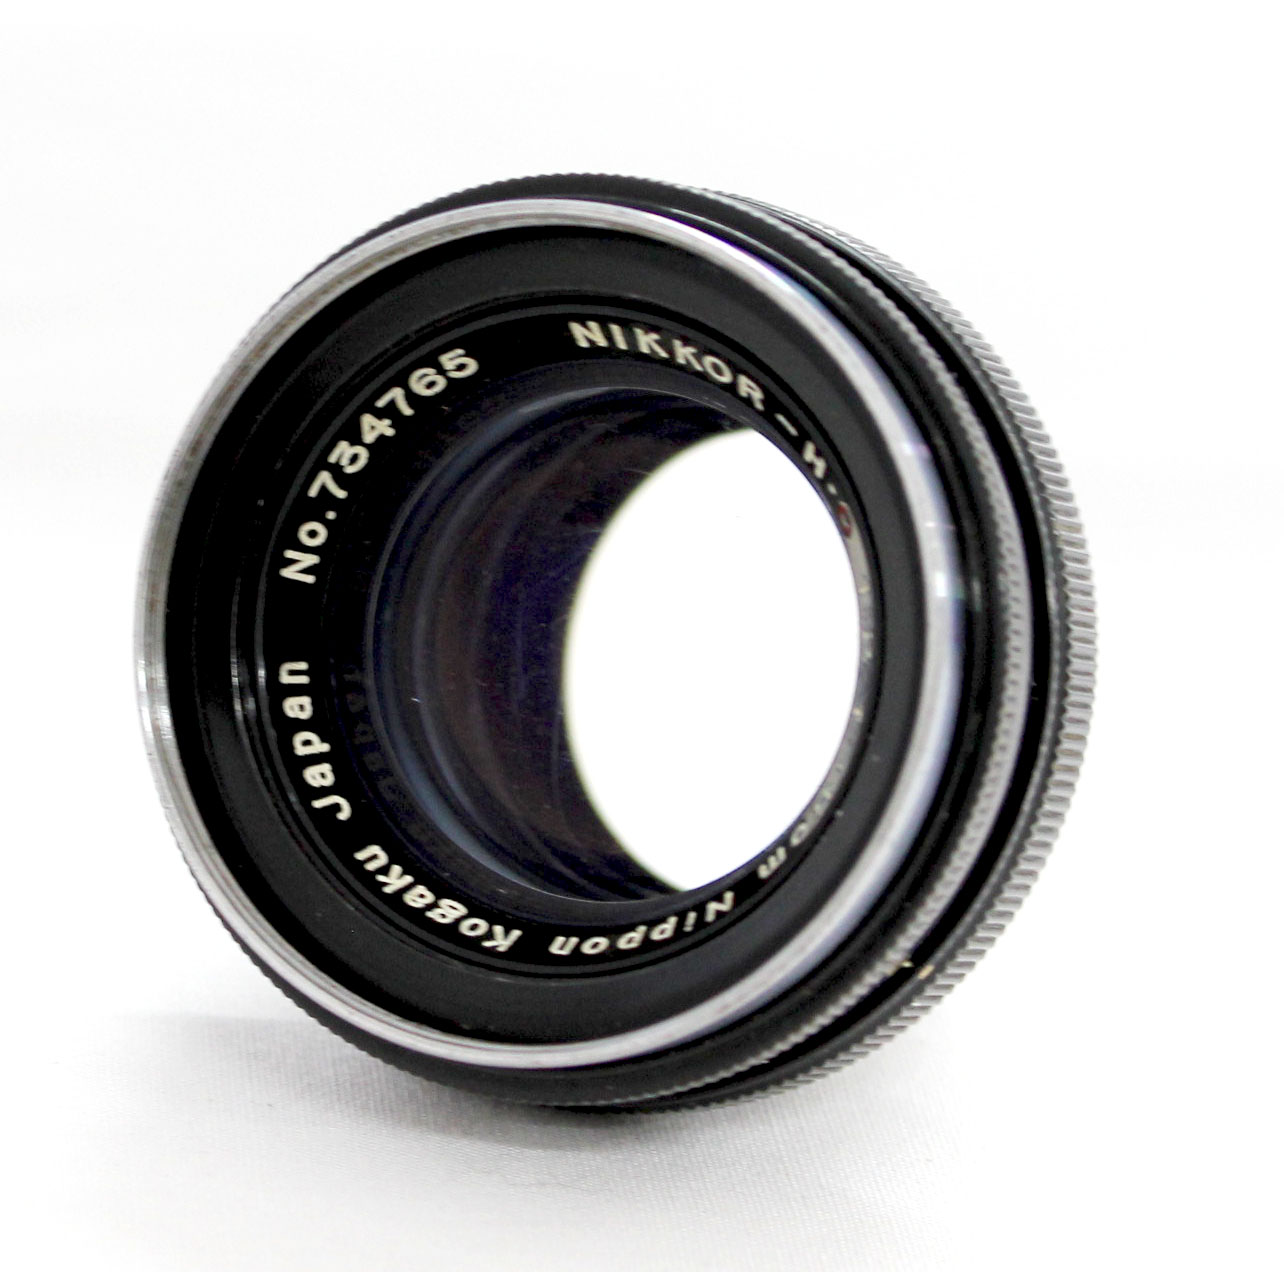 Japan Used Camera Shop | [Excellent++++] Nippon Kogaku Nikkor-H.C 5cm 50mm F/2 Lens for Nikon S Mount from Japan